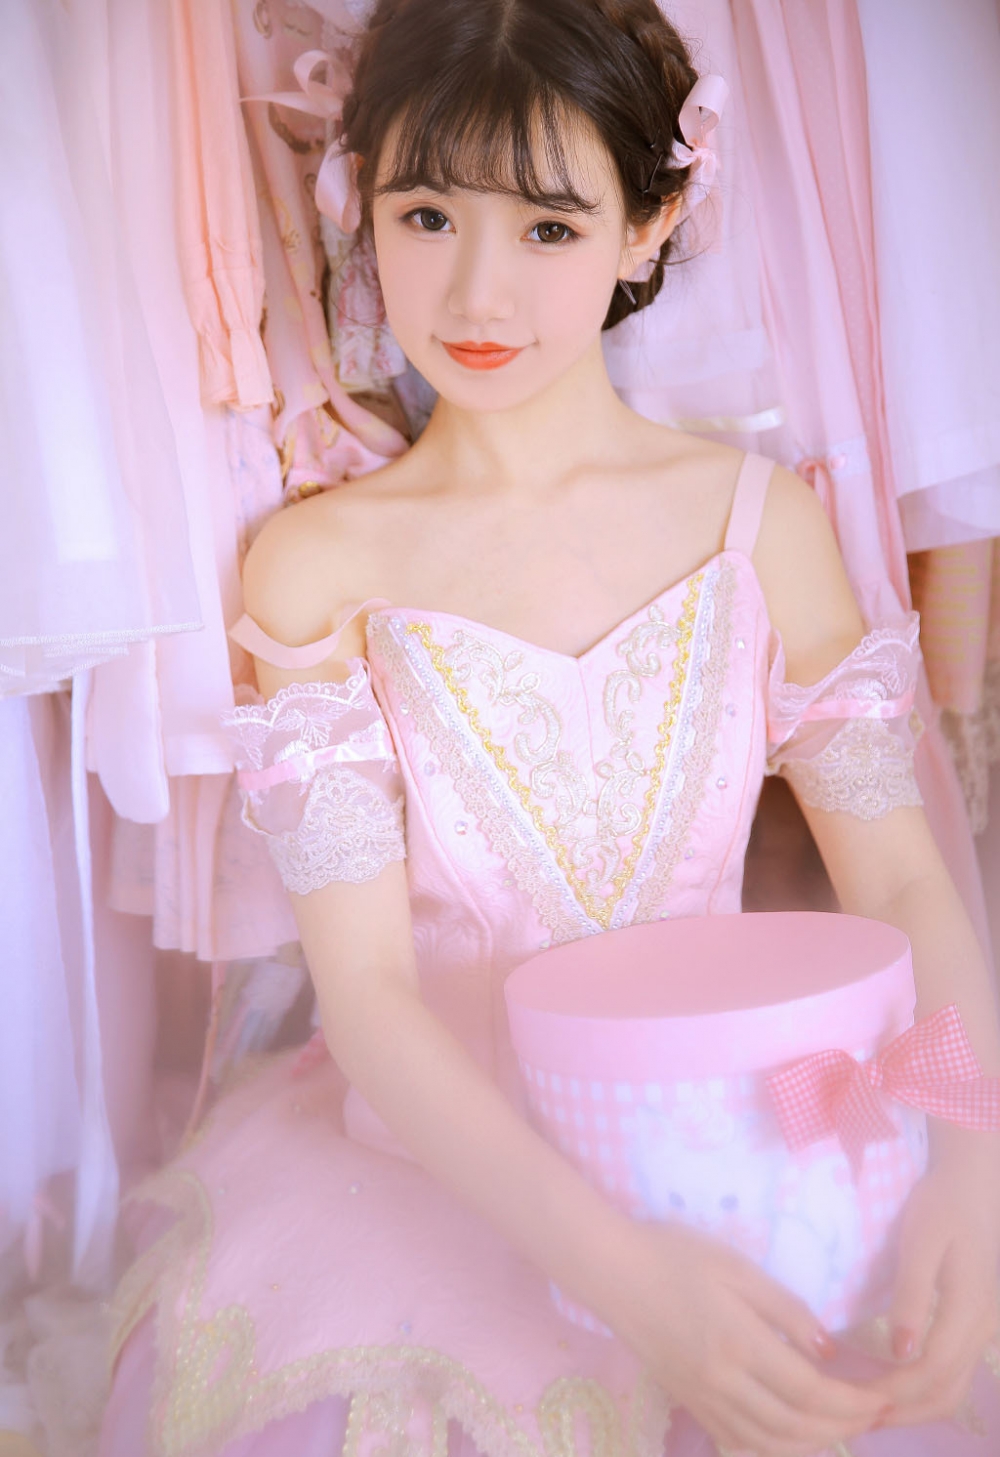 漂亮美眉芭蕾舞公主裙清纯甜美私房写真